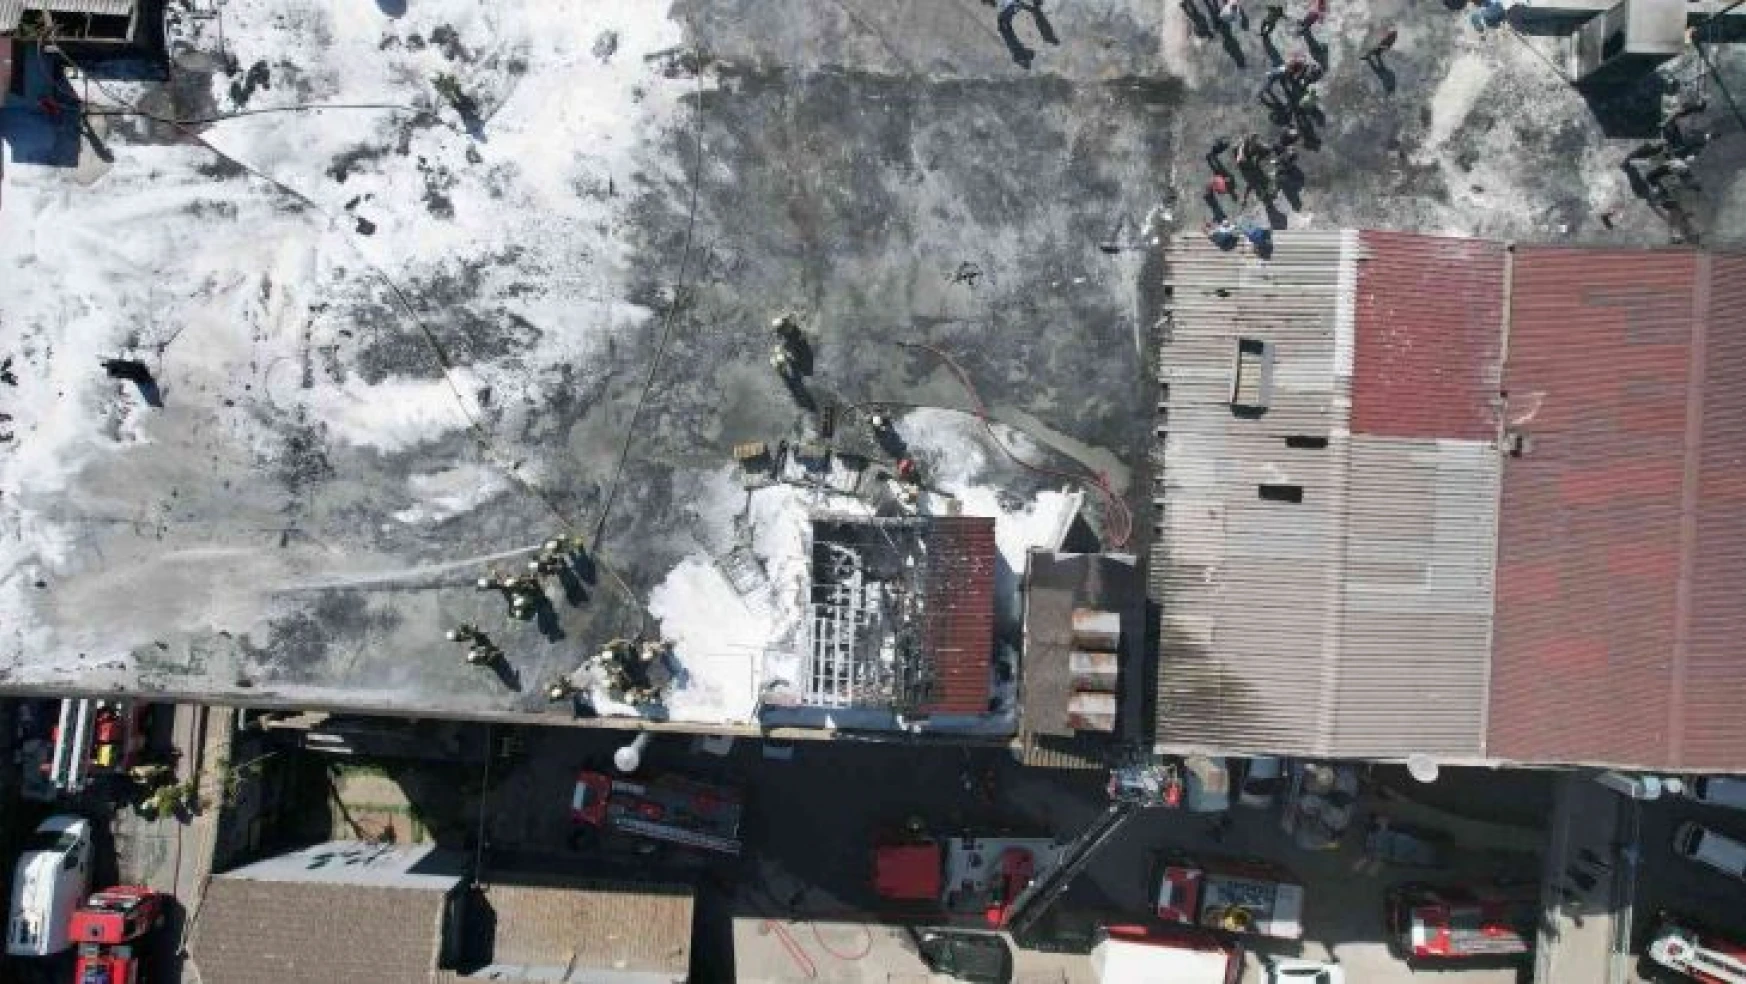 Bayrampaşa'da sanayi sitesinin çatısında bulunan depo alev alev yandı